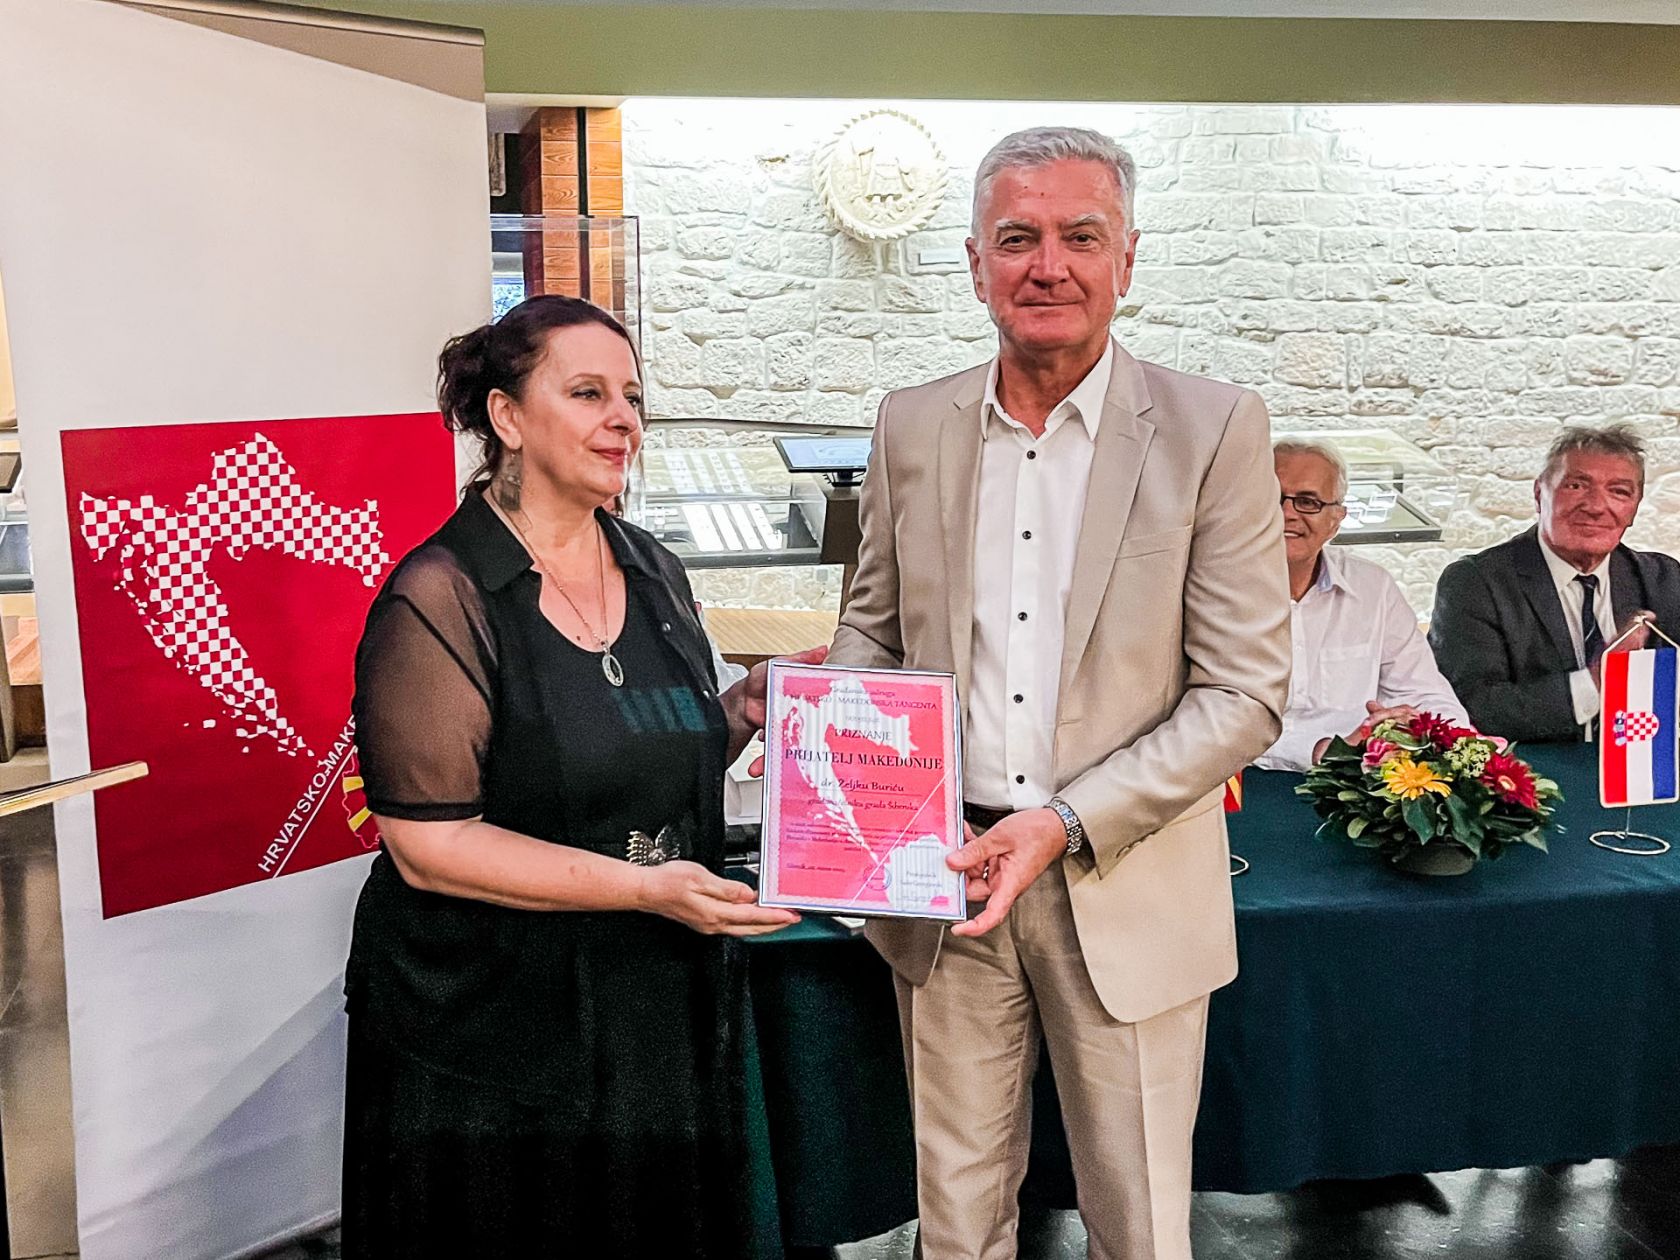 Gradonačelnik Burić dobitnik nagrade „Prijatelj Makedonije“